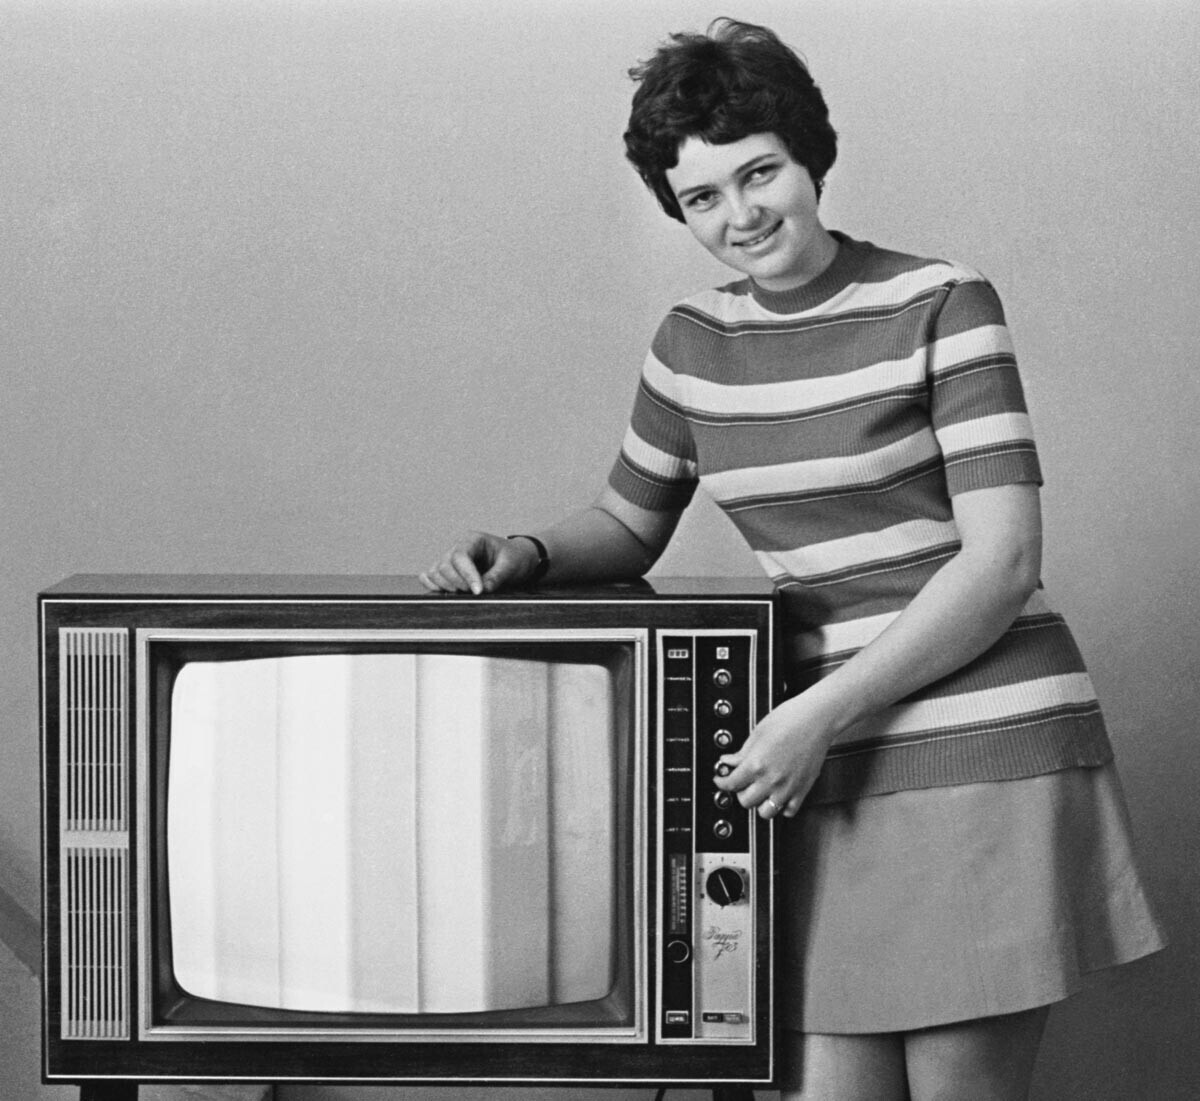 ZSSR. Leningrad, maj1973. Monterka Anna Saveljeva med demonstracijo barvne televizije Mavrica-3032 